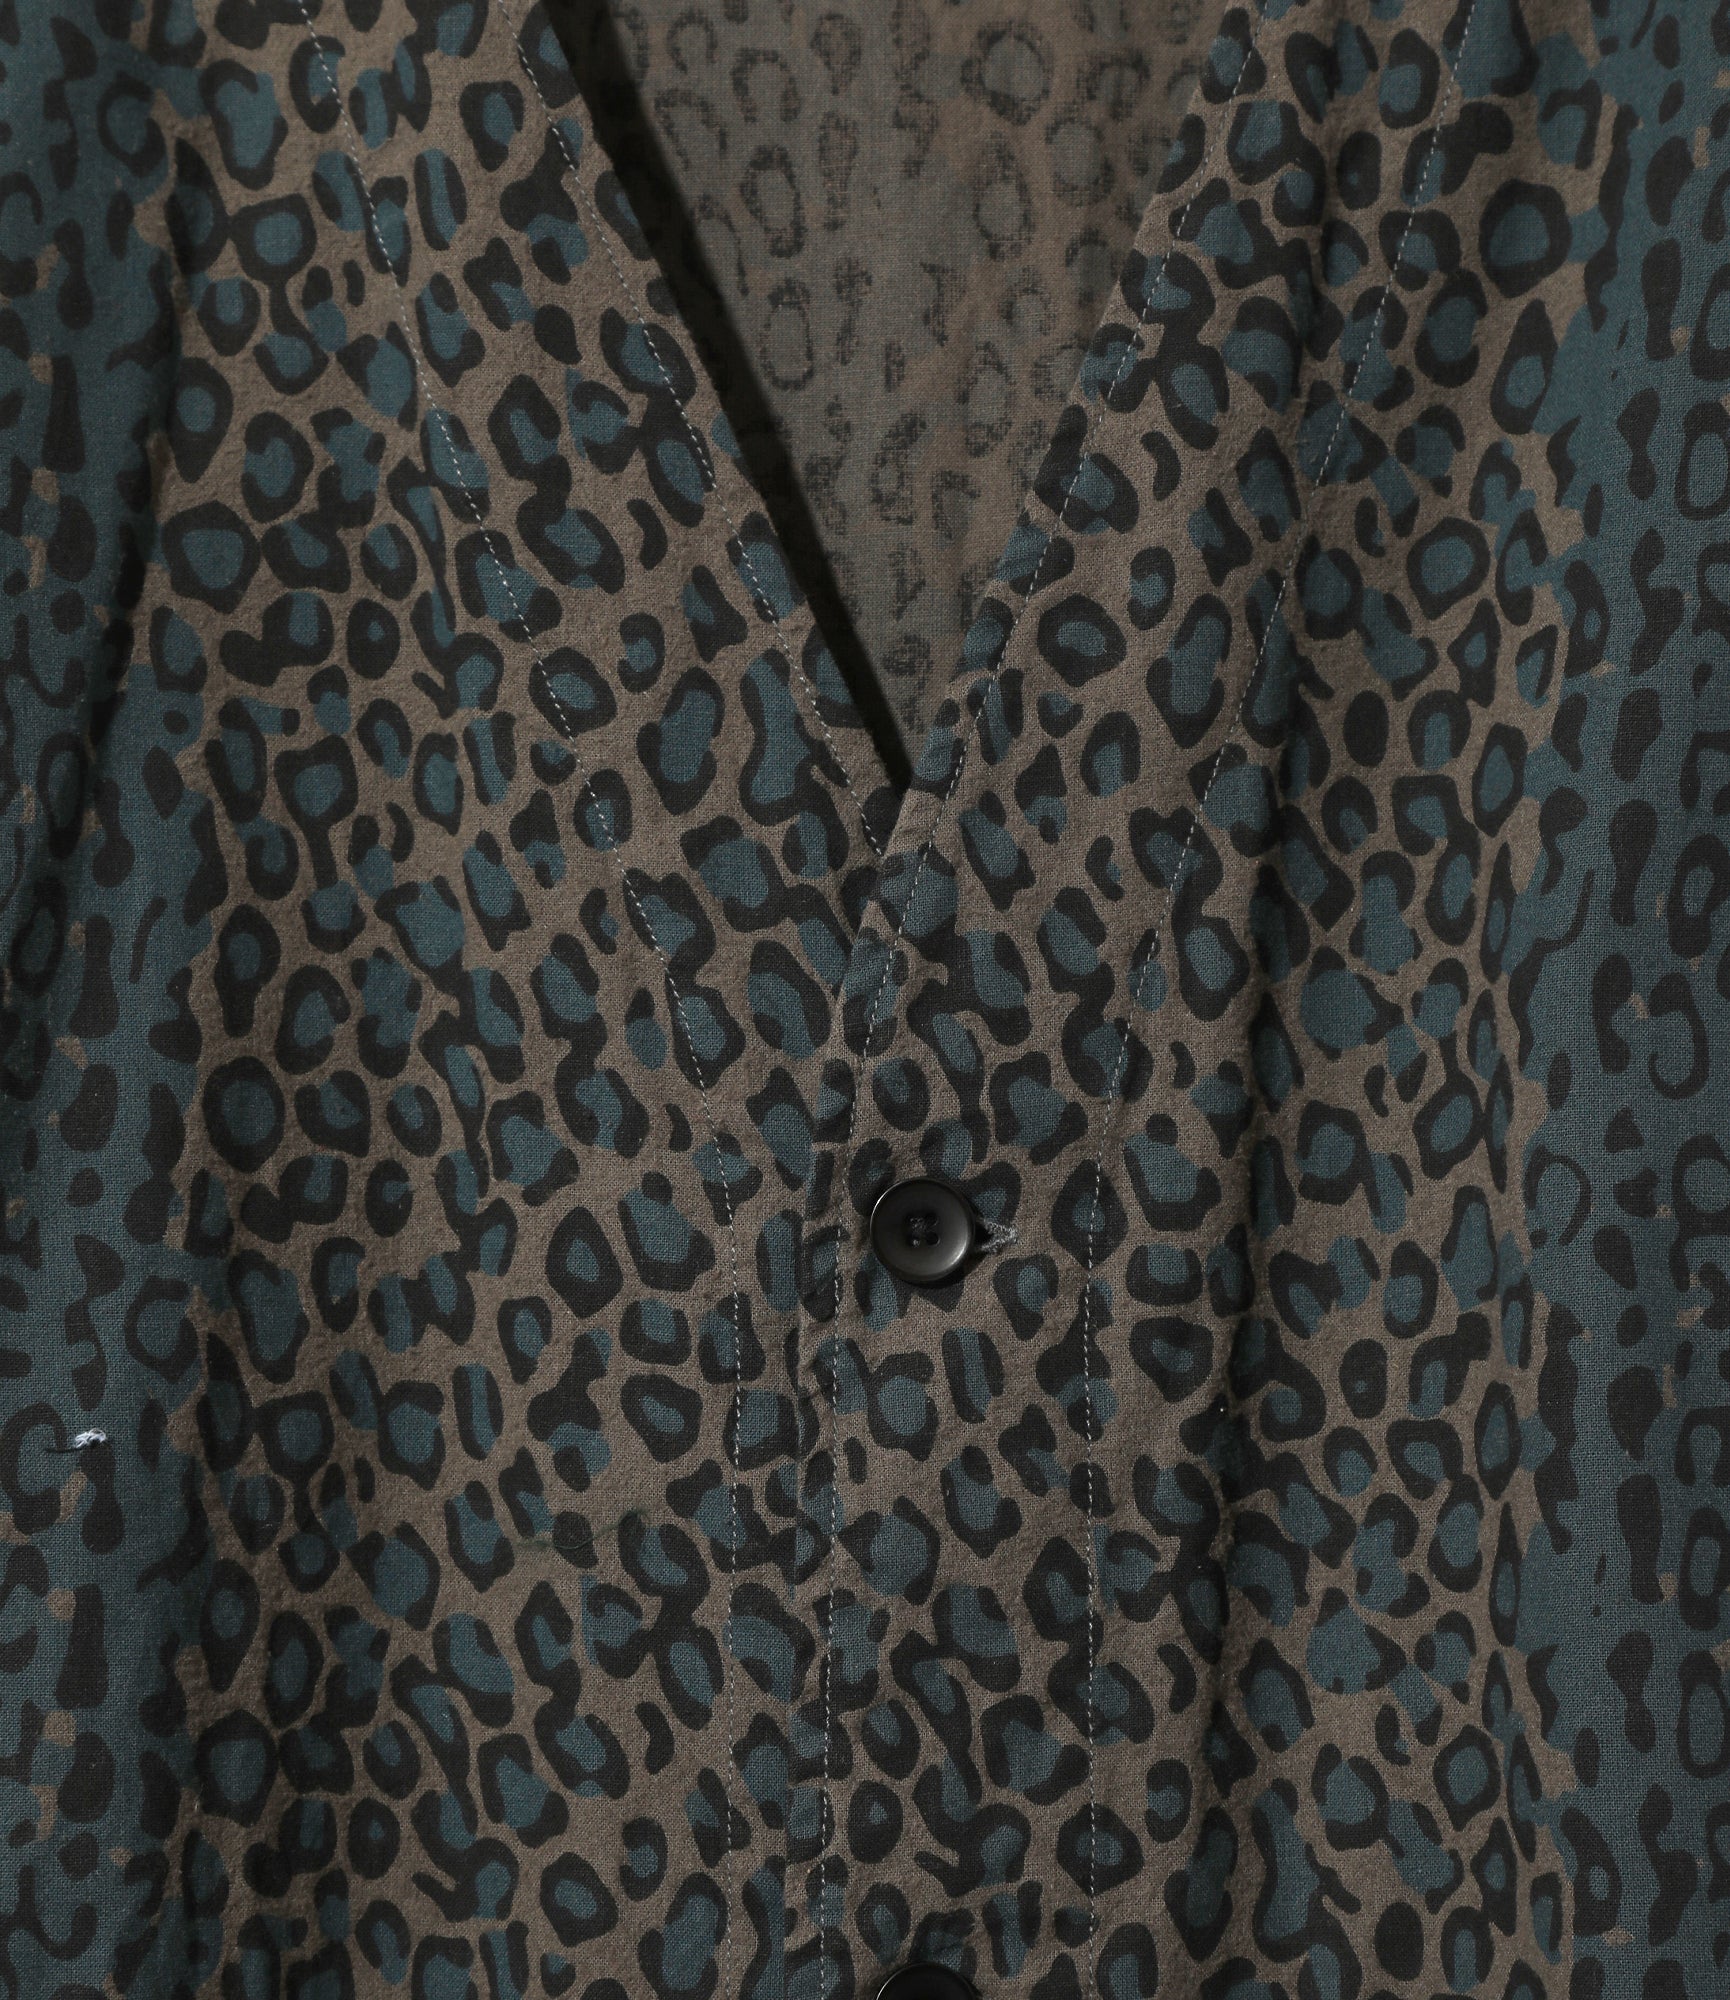 V Neck Jacket - Leopard - Flannel Cloth / Printed